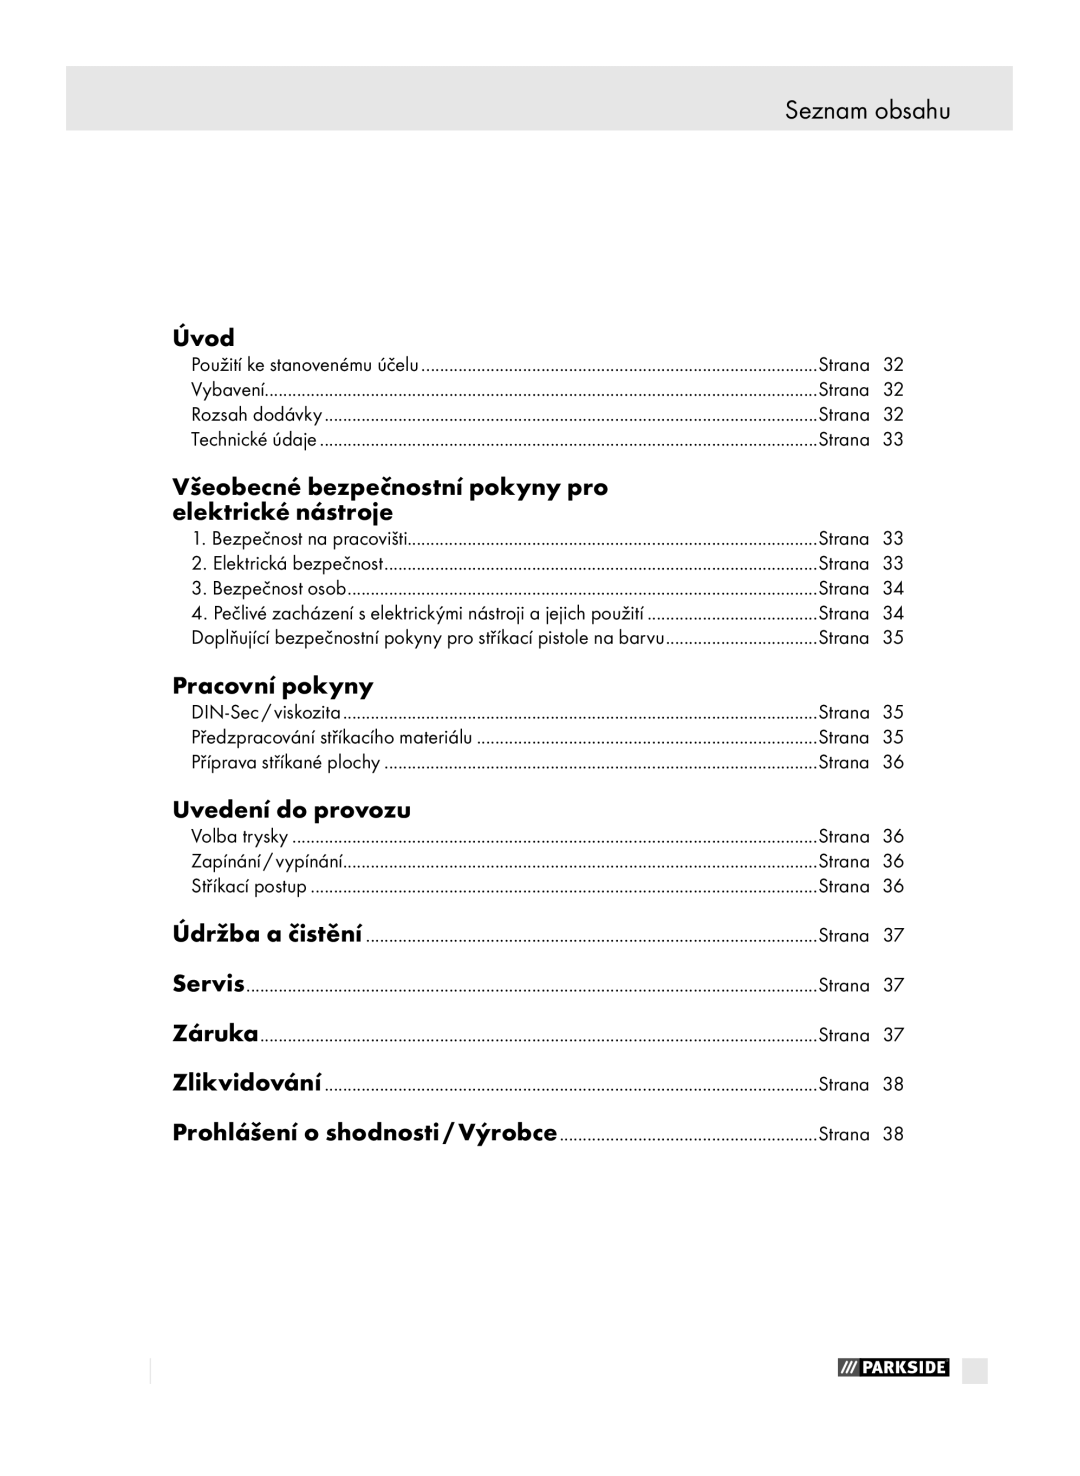 Parkside PFSP 100 manual Seznam obsahu, Úvod, Všeobecné bezpečnostní pokyny pro Elektrické nástroje, Pracovní pokyny 